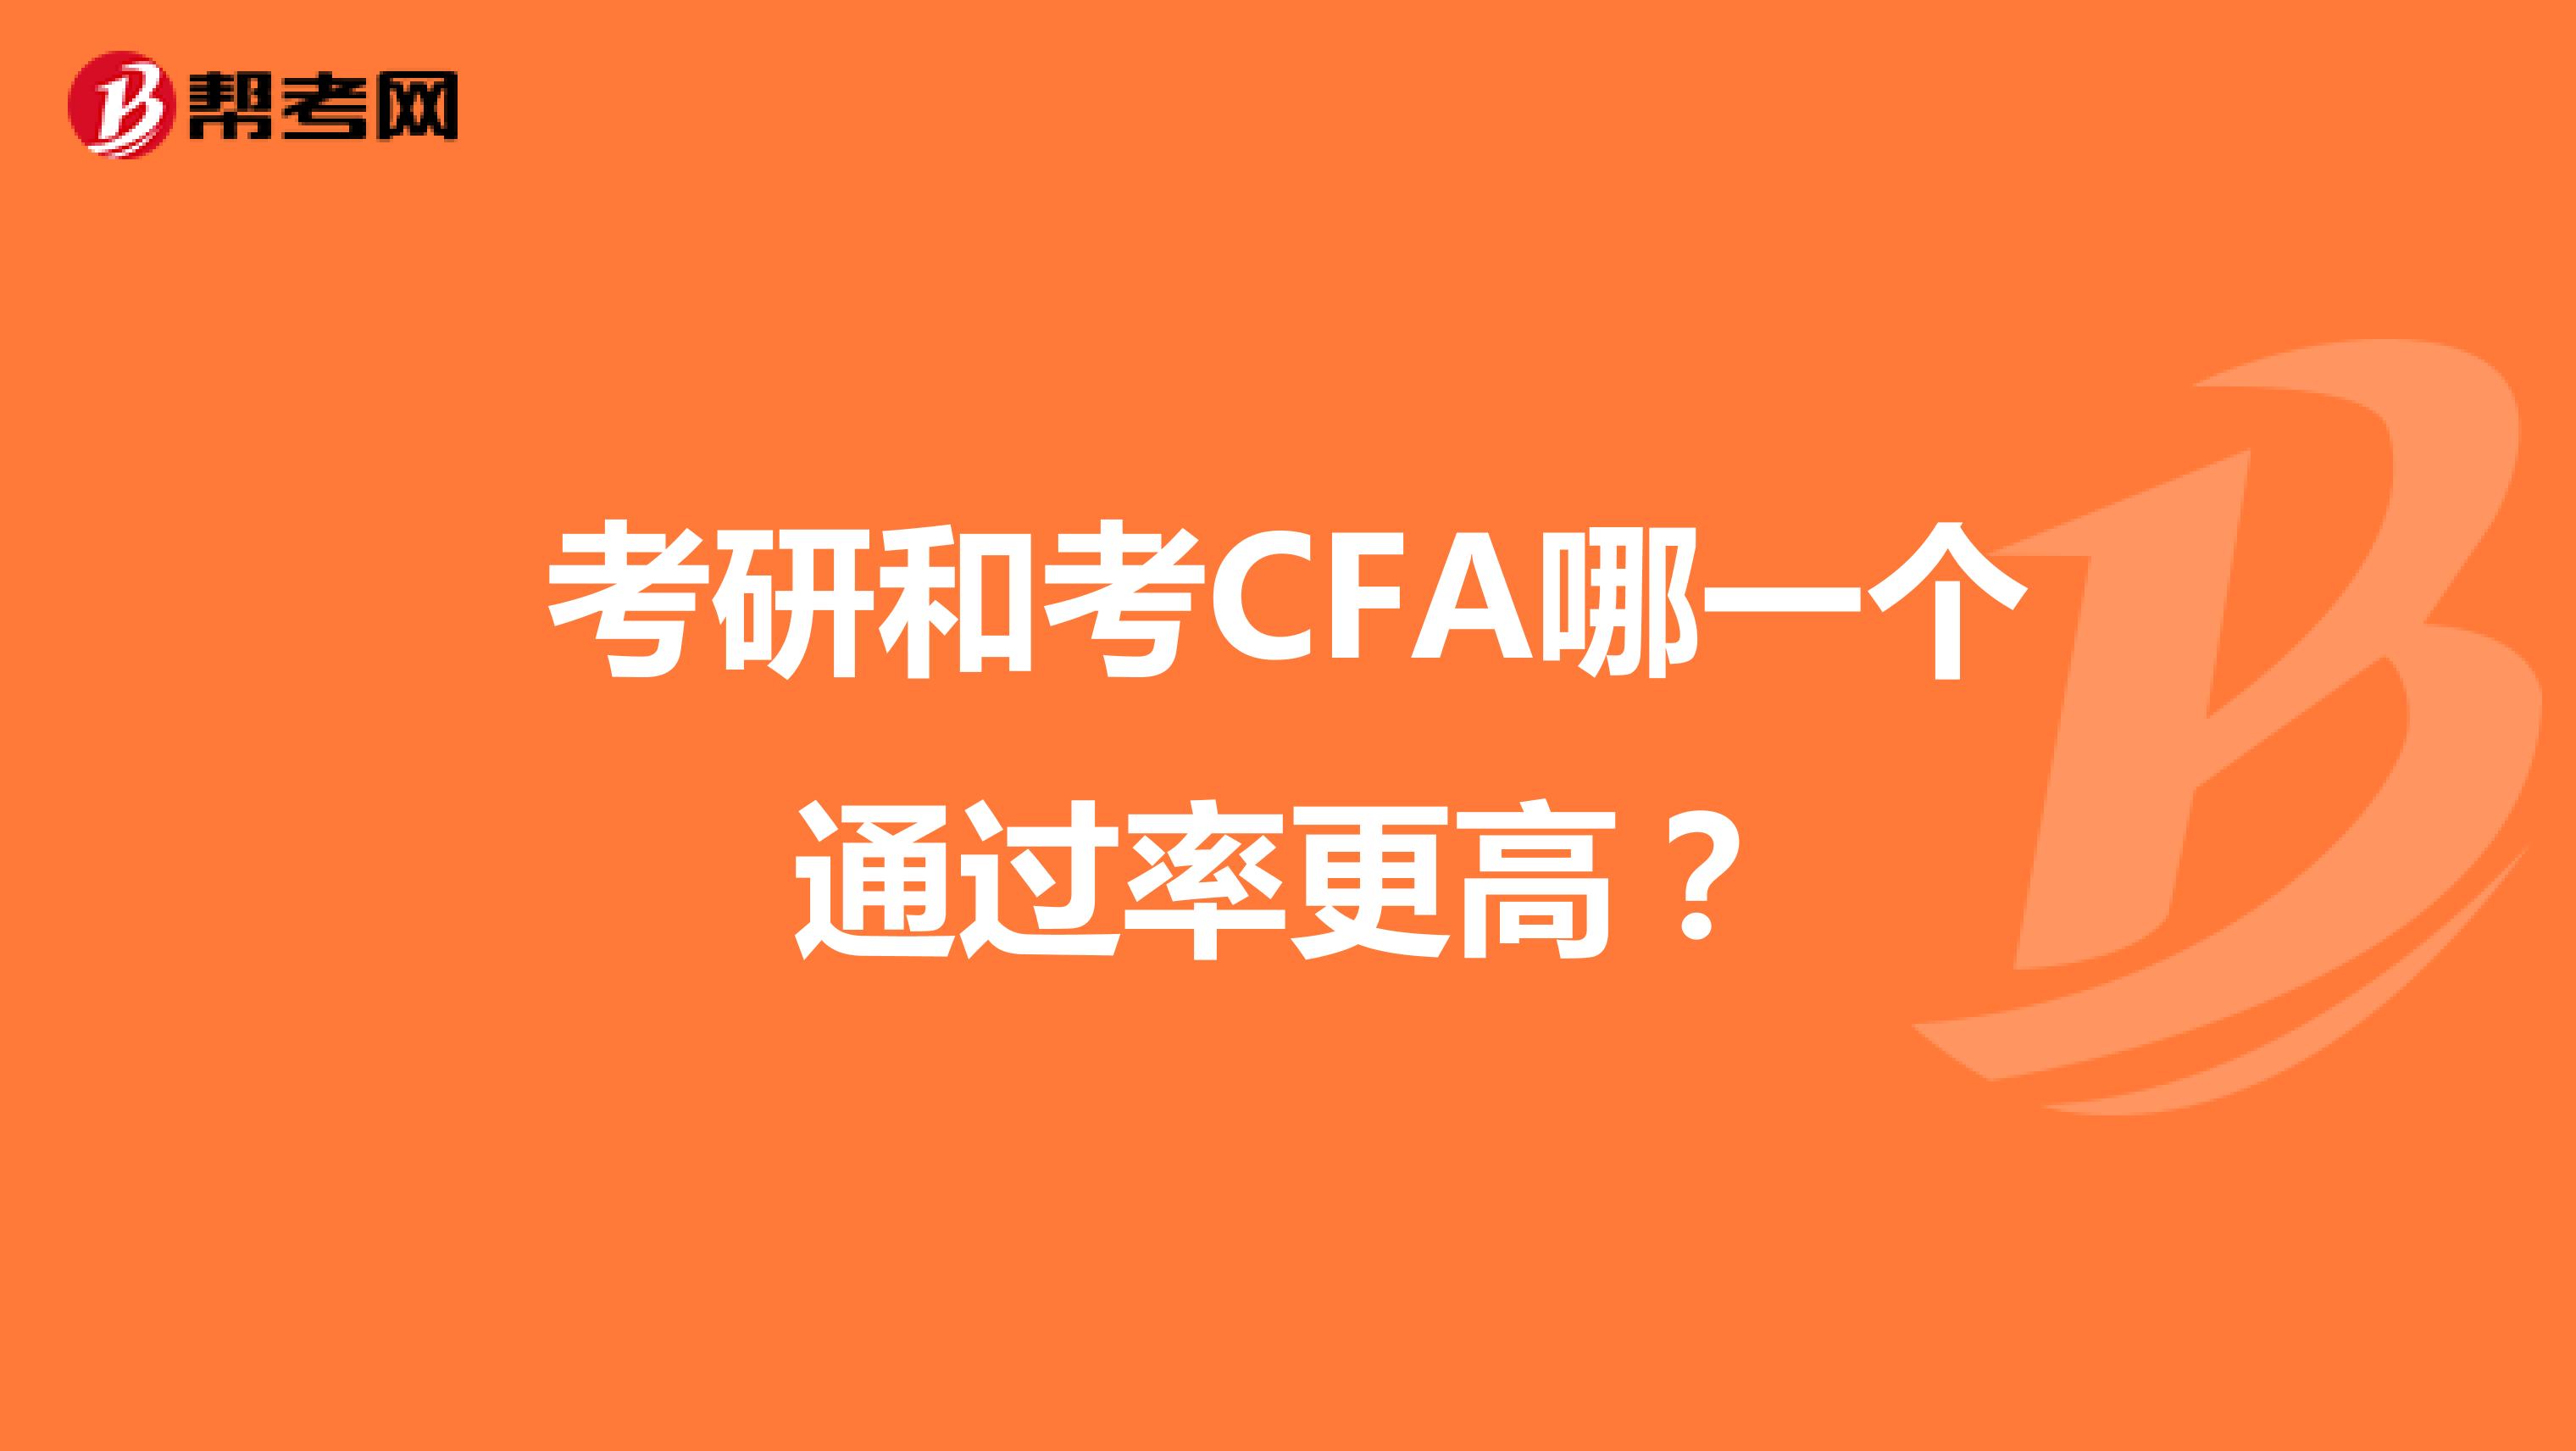 考研和考CFA哪一个通过率更高？